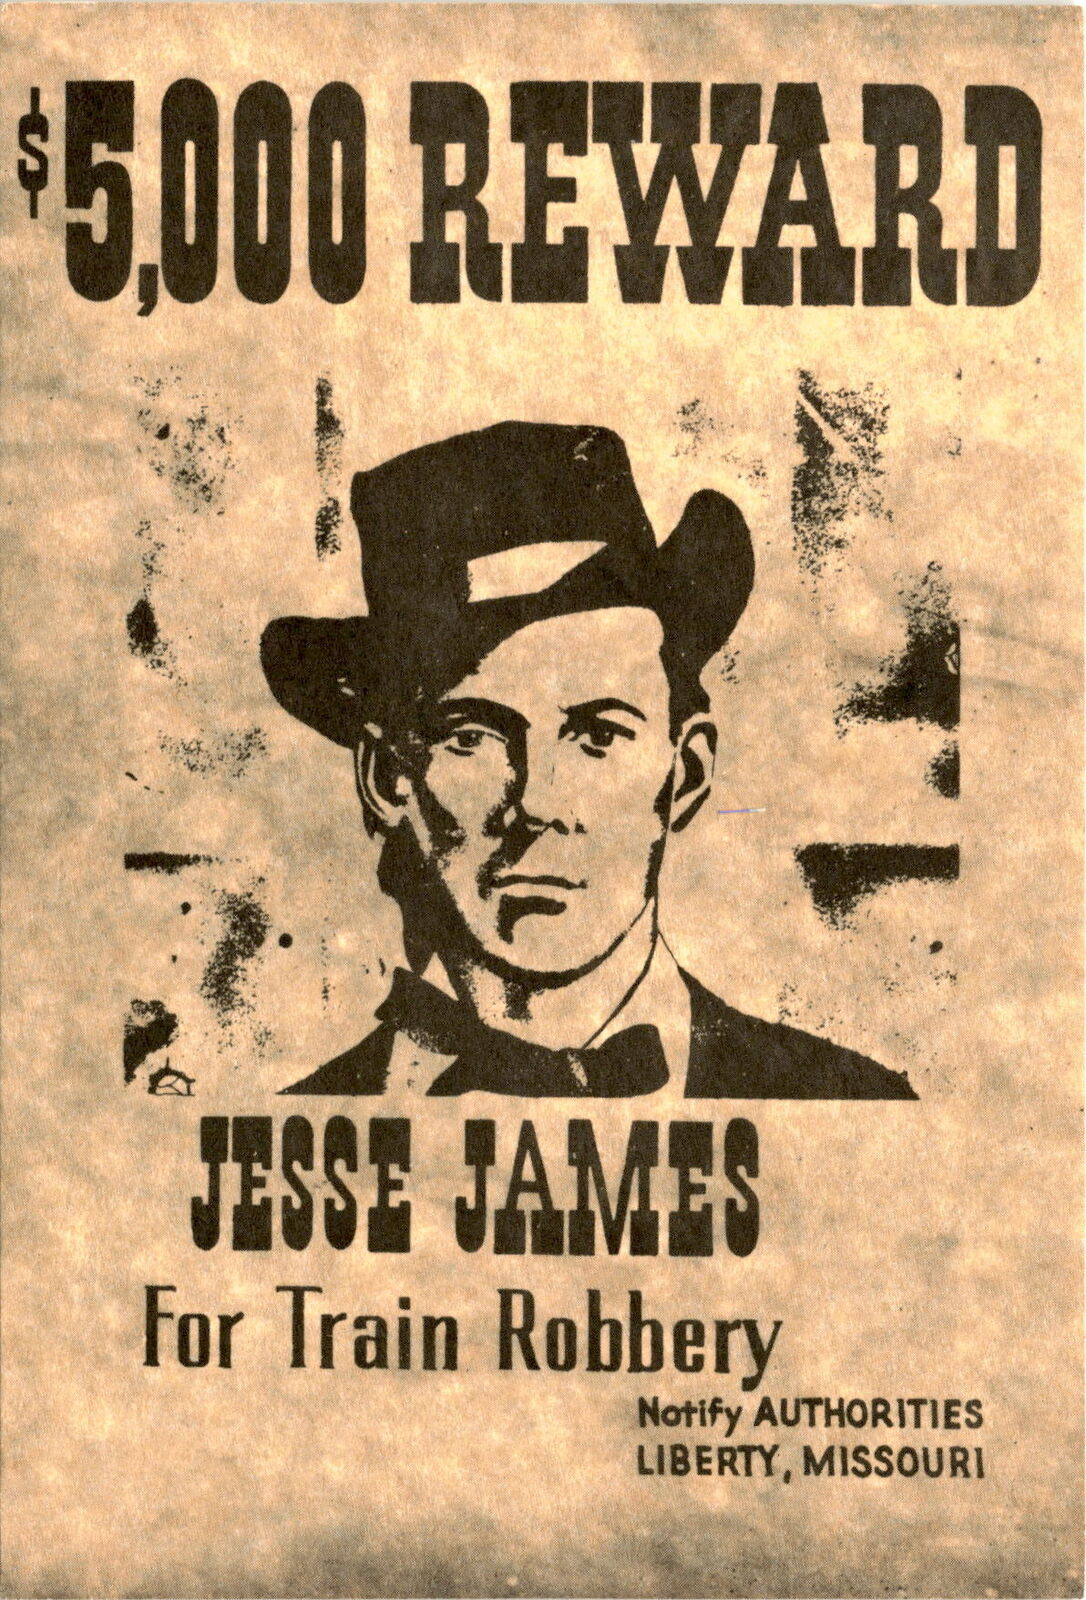 Vintage postcard: $5,000 reward for Jesse James info